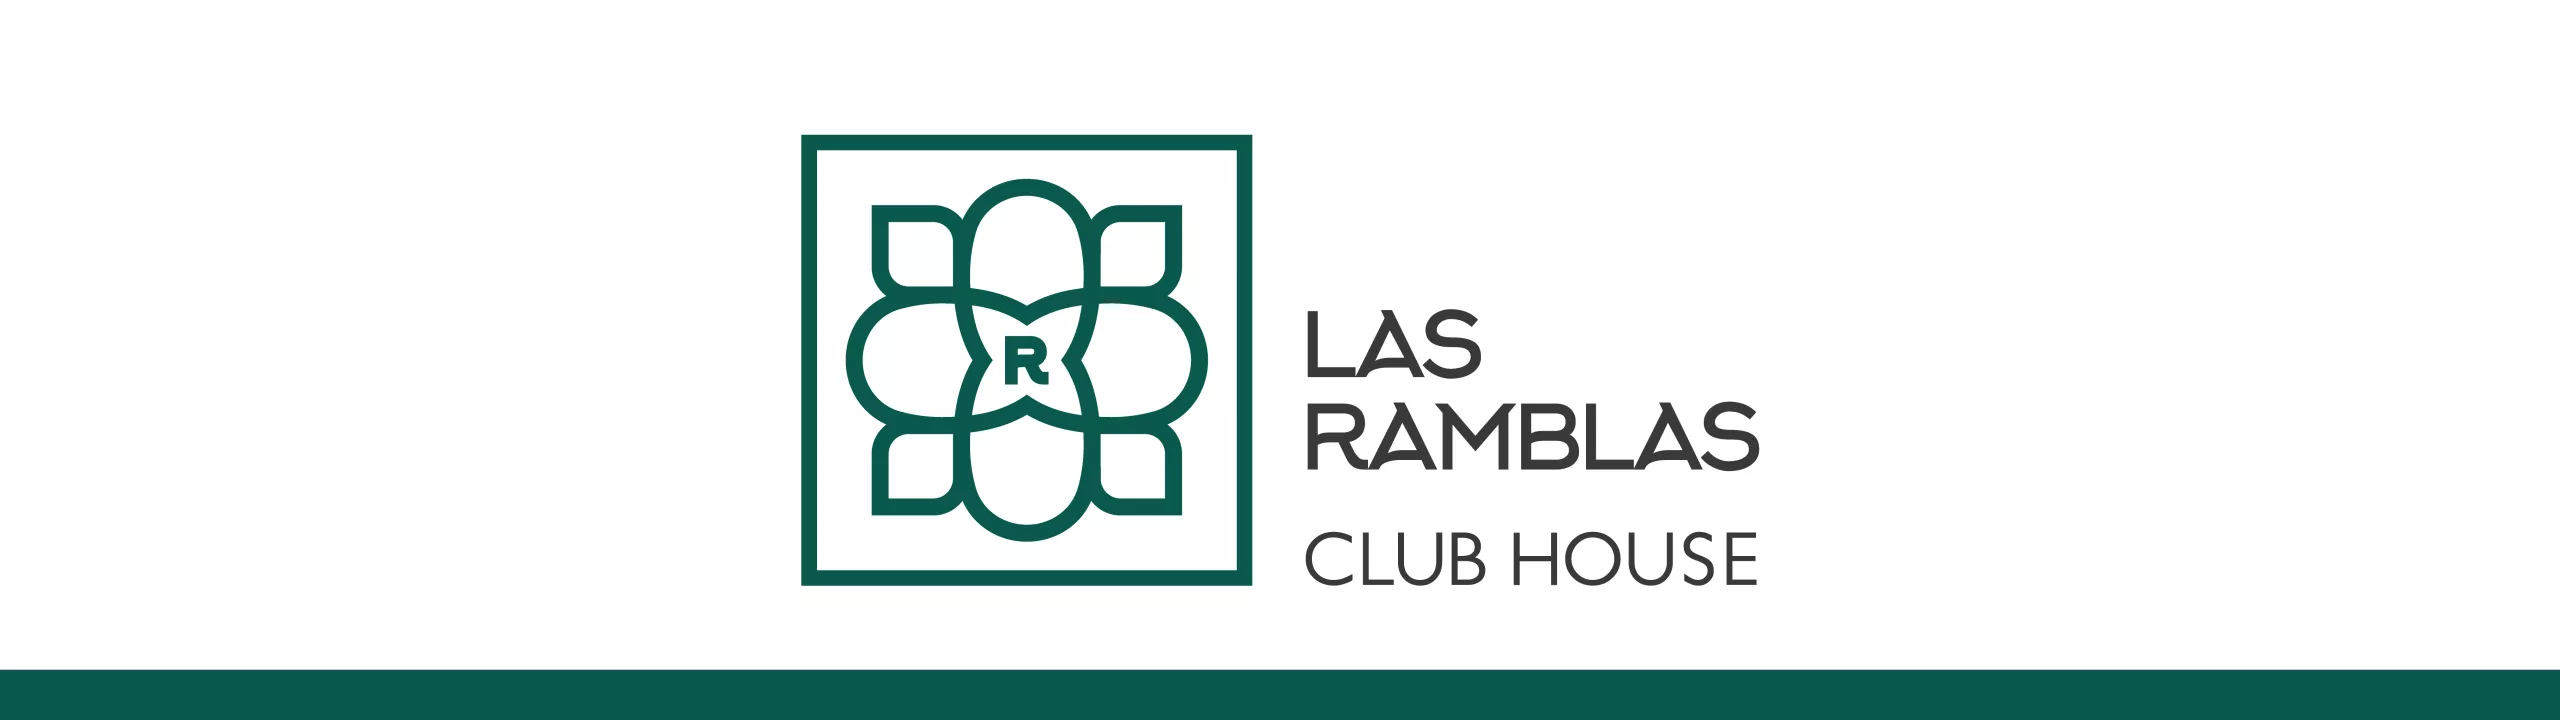 Club House Las Ramblas